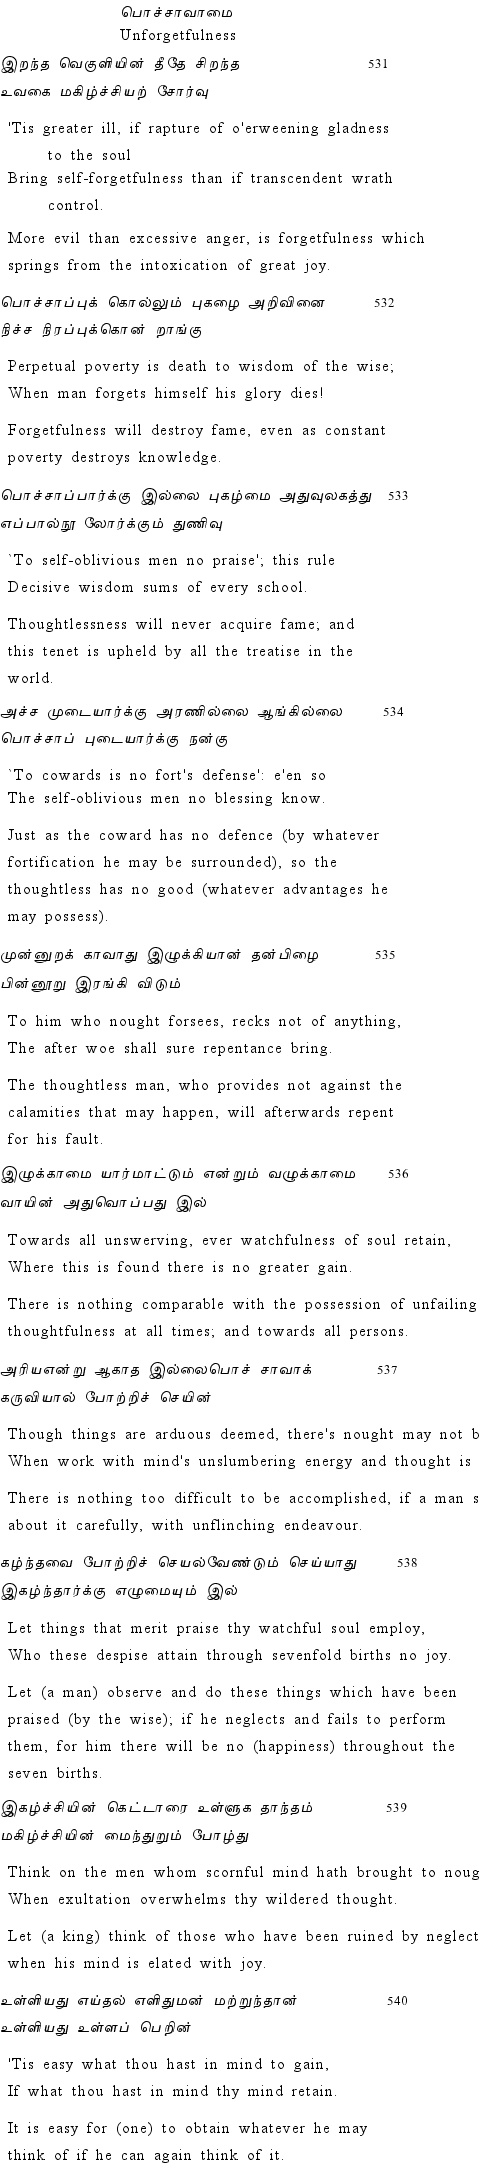 Text of Adhikaram 54